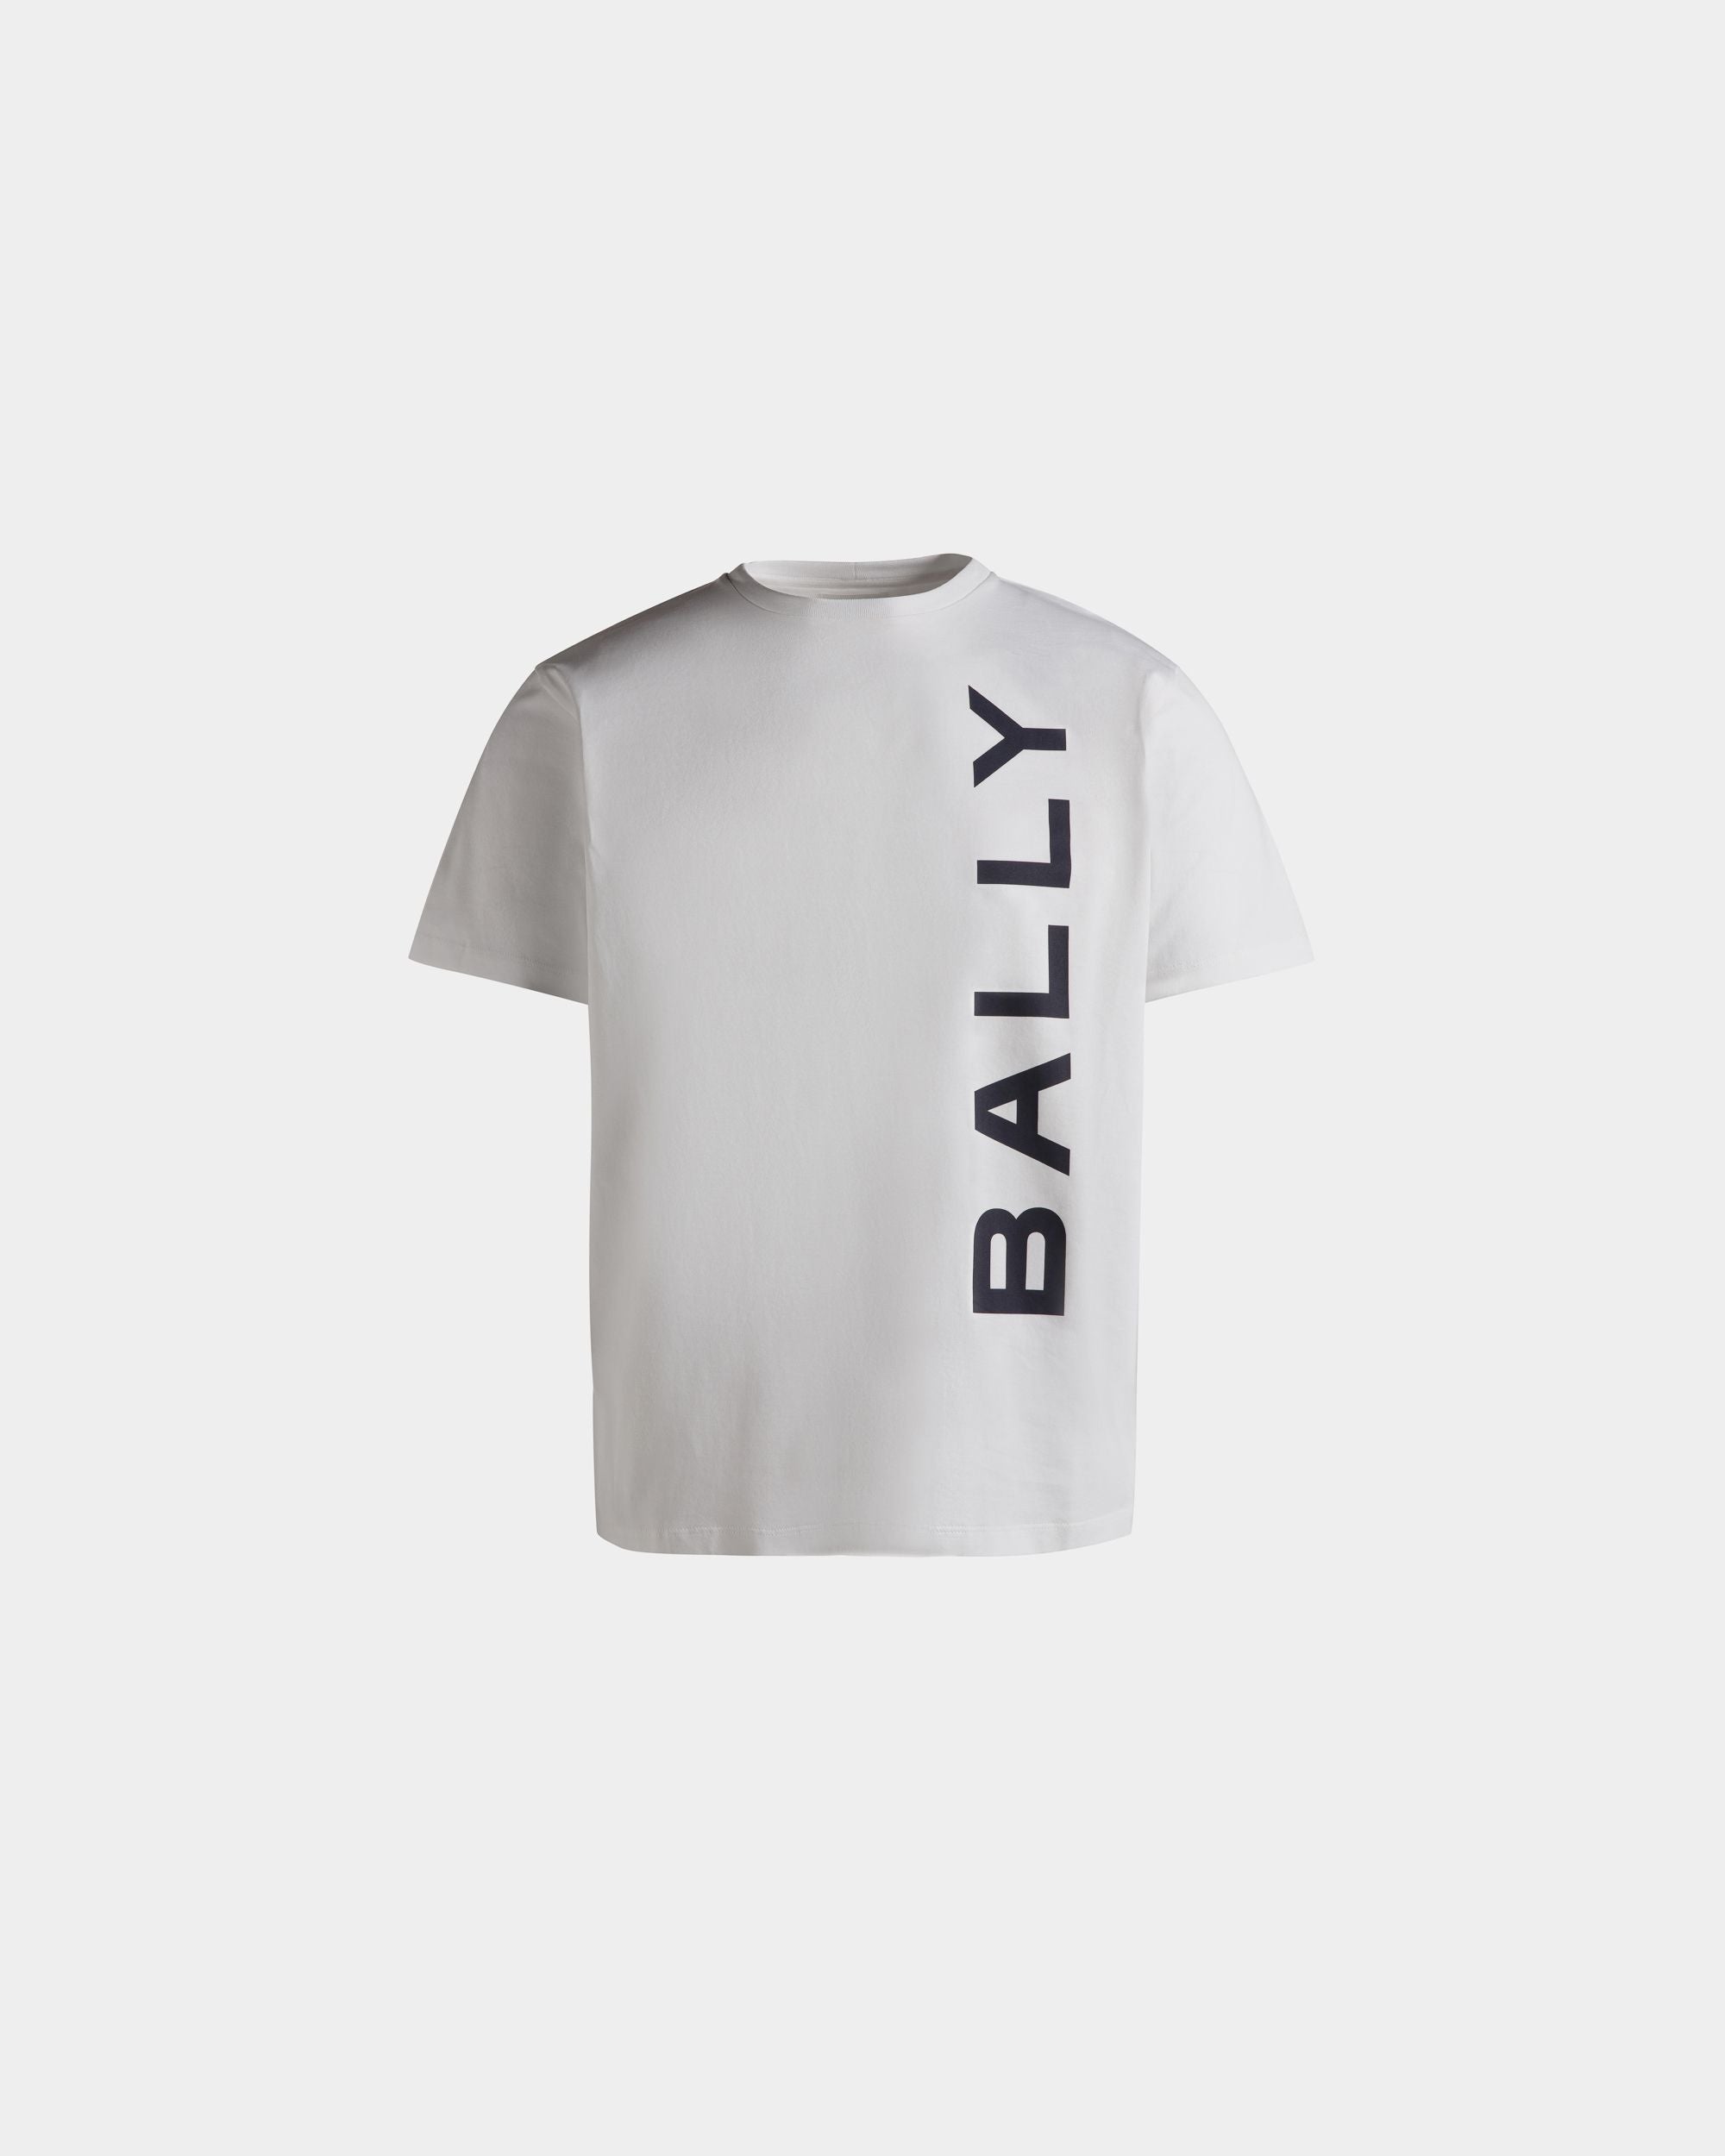 メンズ Tシャツ ホワイト コットン | Bally | Still Life フロント